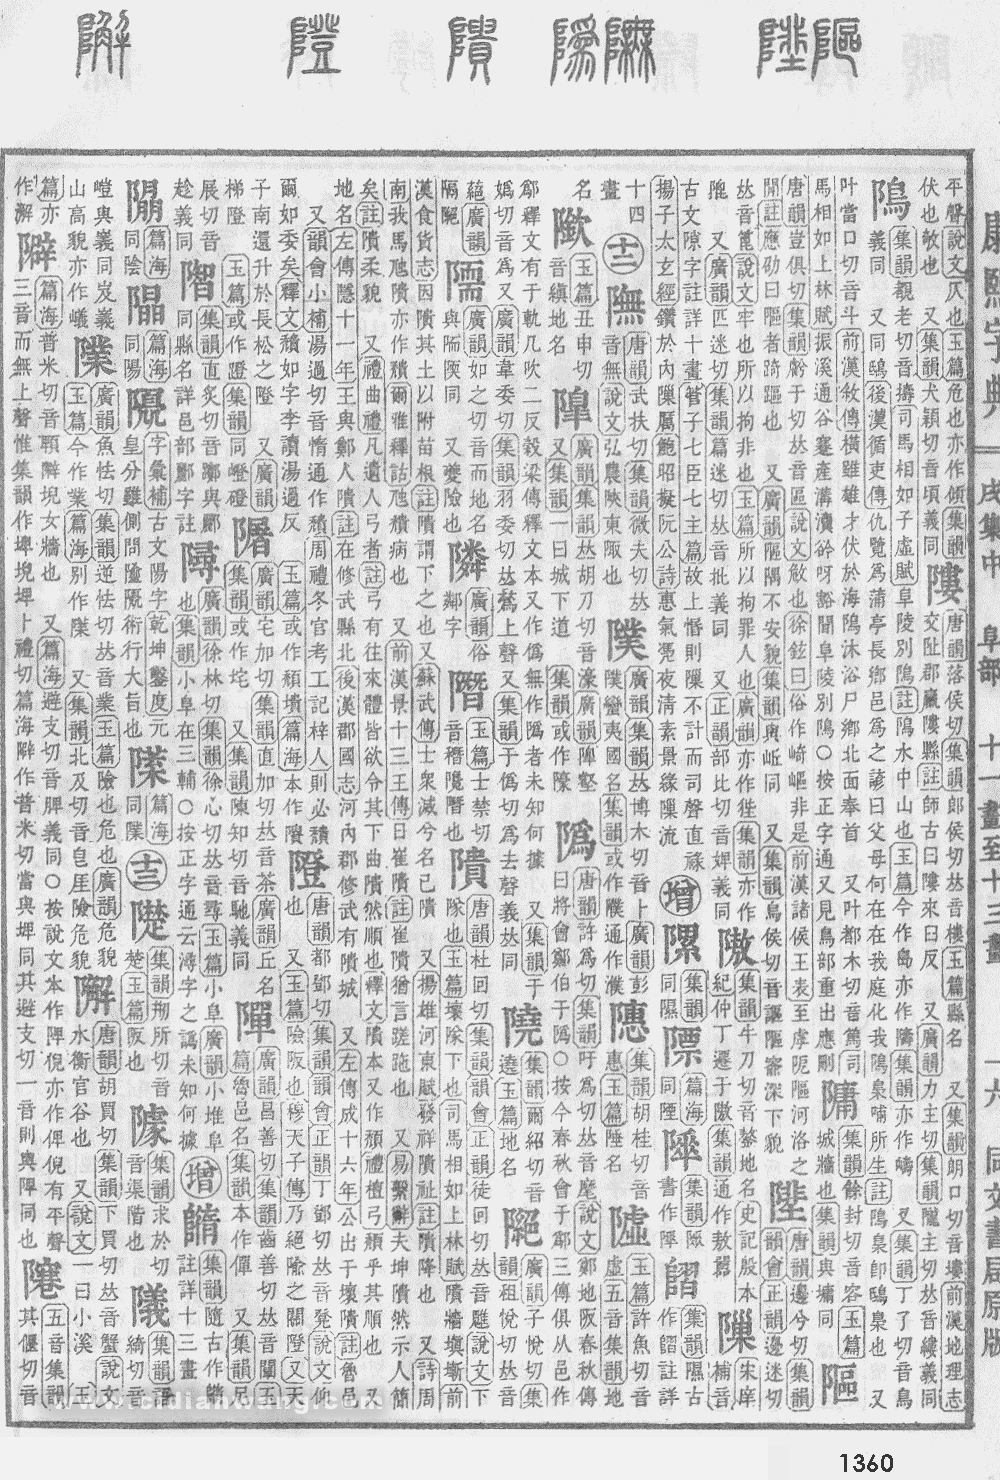 康熙字典掃描版第1360頁